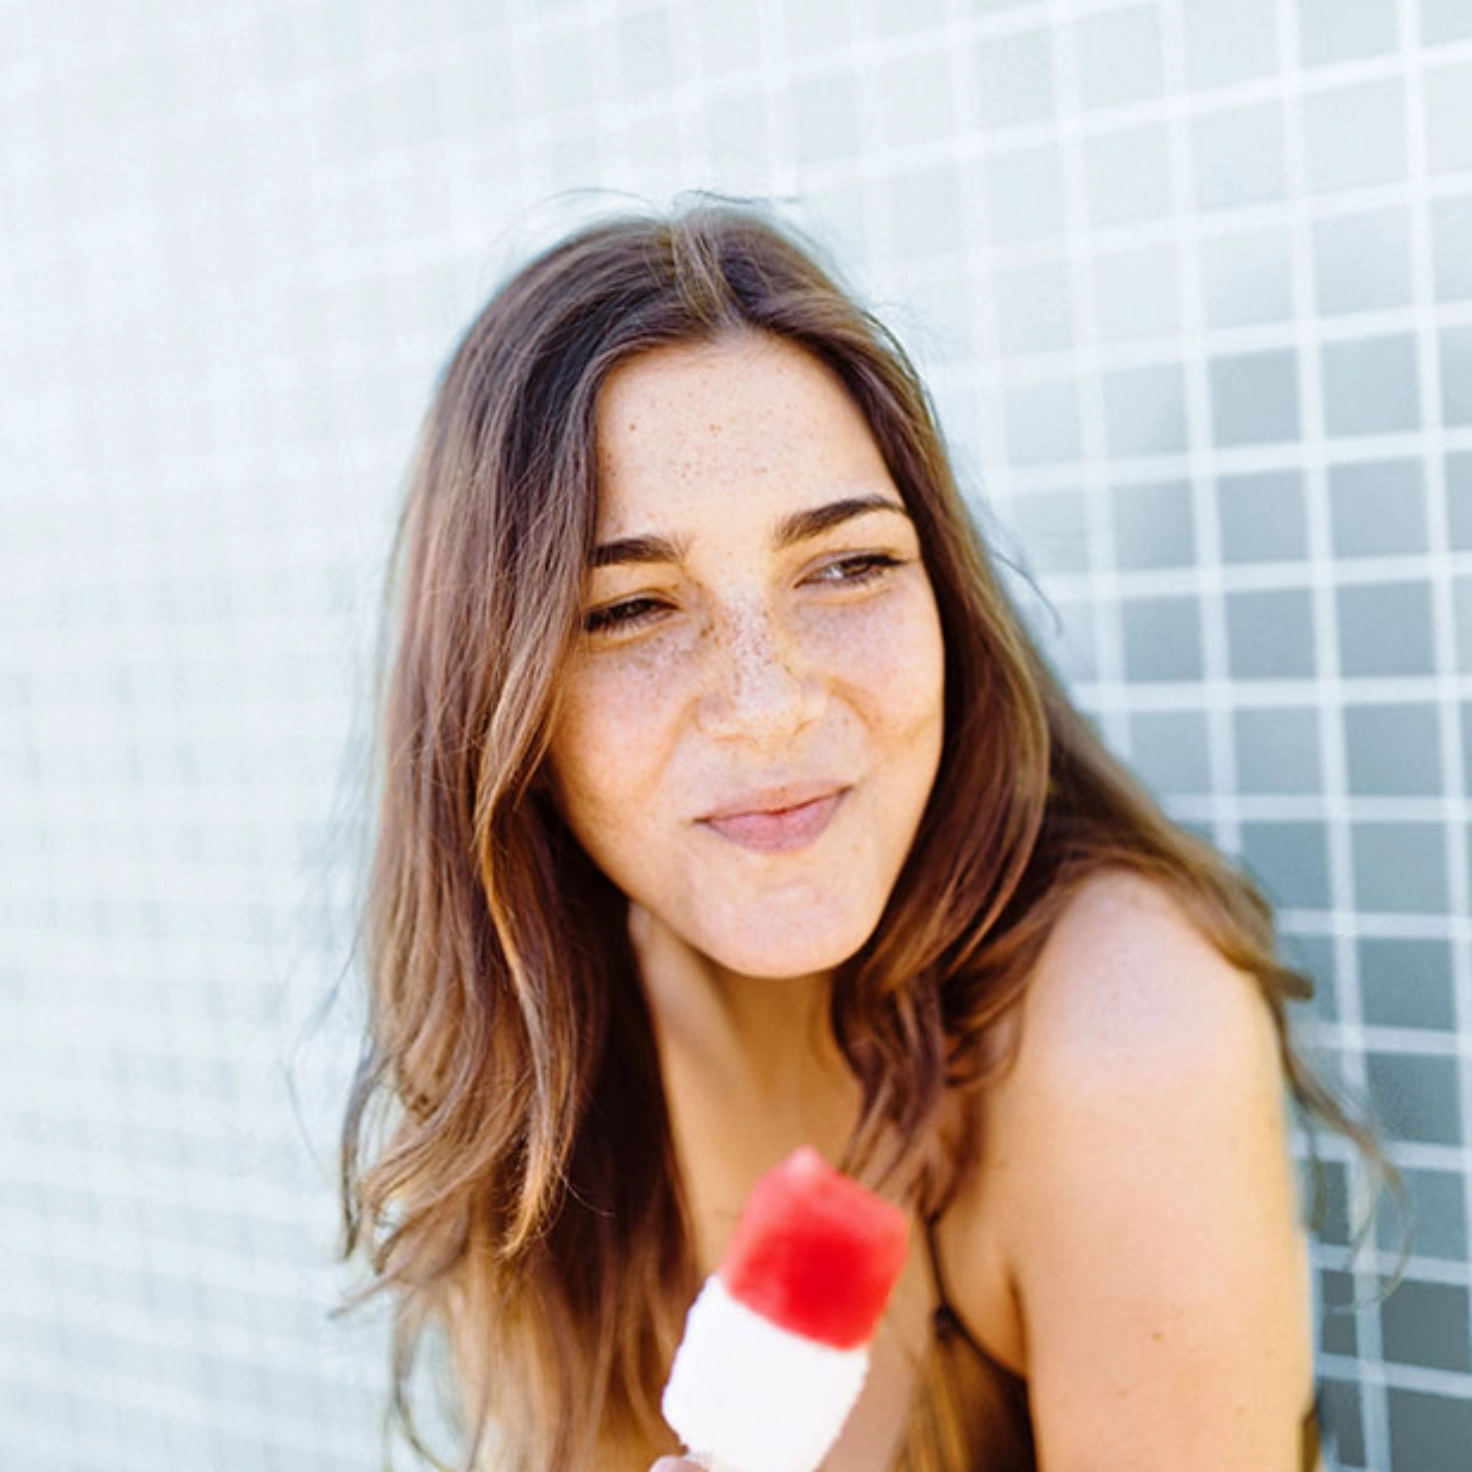 Eine junge Frau hält ein Eis am Stiel in der Hand und lächelt.